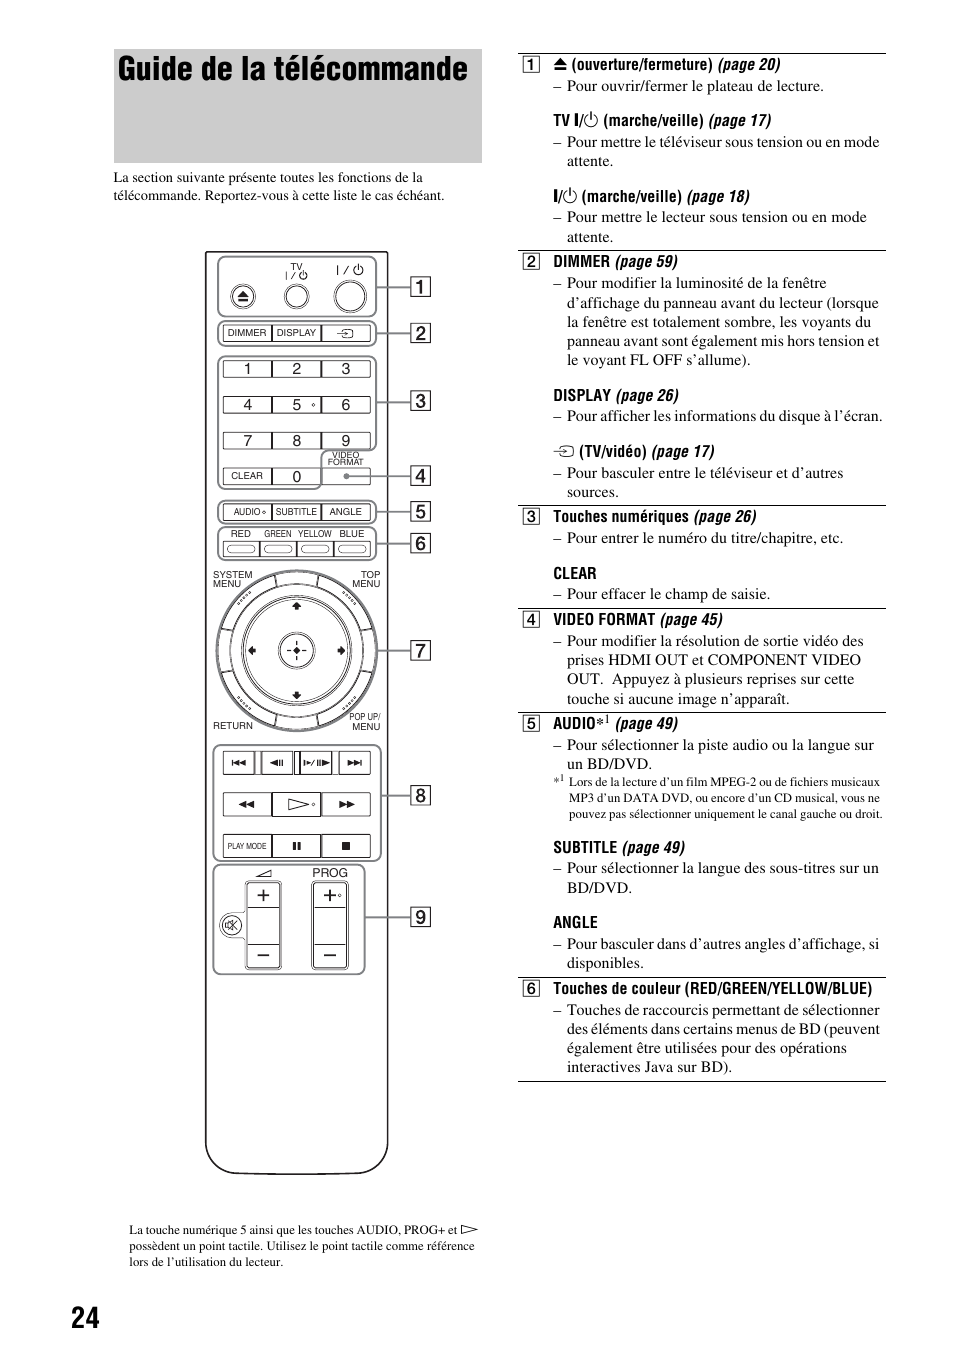 Guide de la télécommande | Sony BDP-S300 Manuel d'utilisation | Page 24 / 67